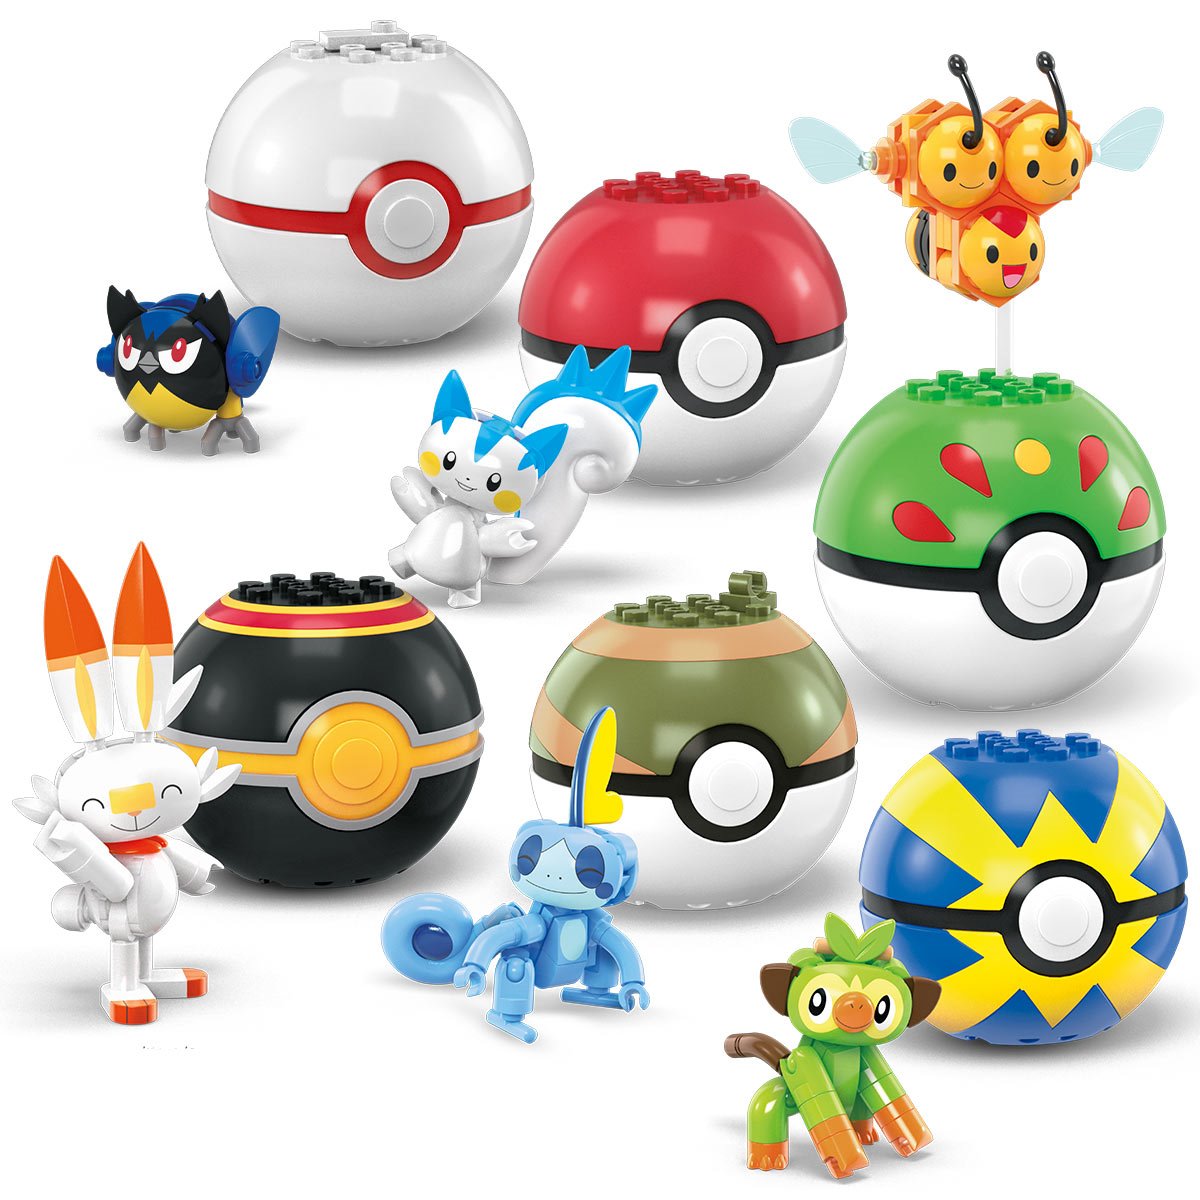 Mega Construx Pokémon Poke Ball Assortment - Generations